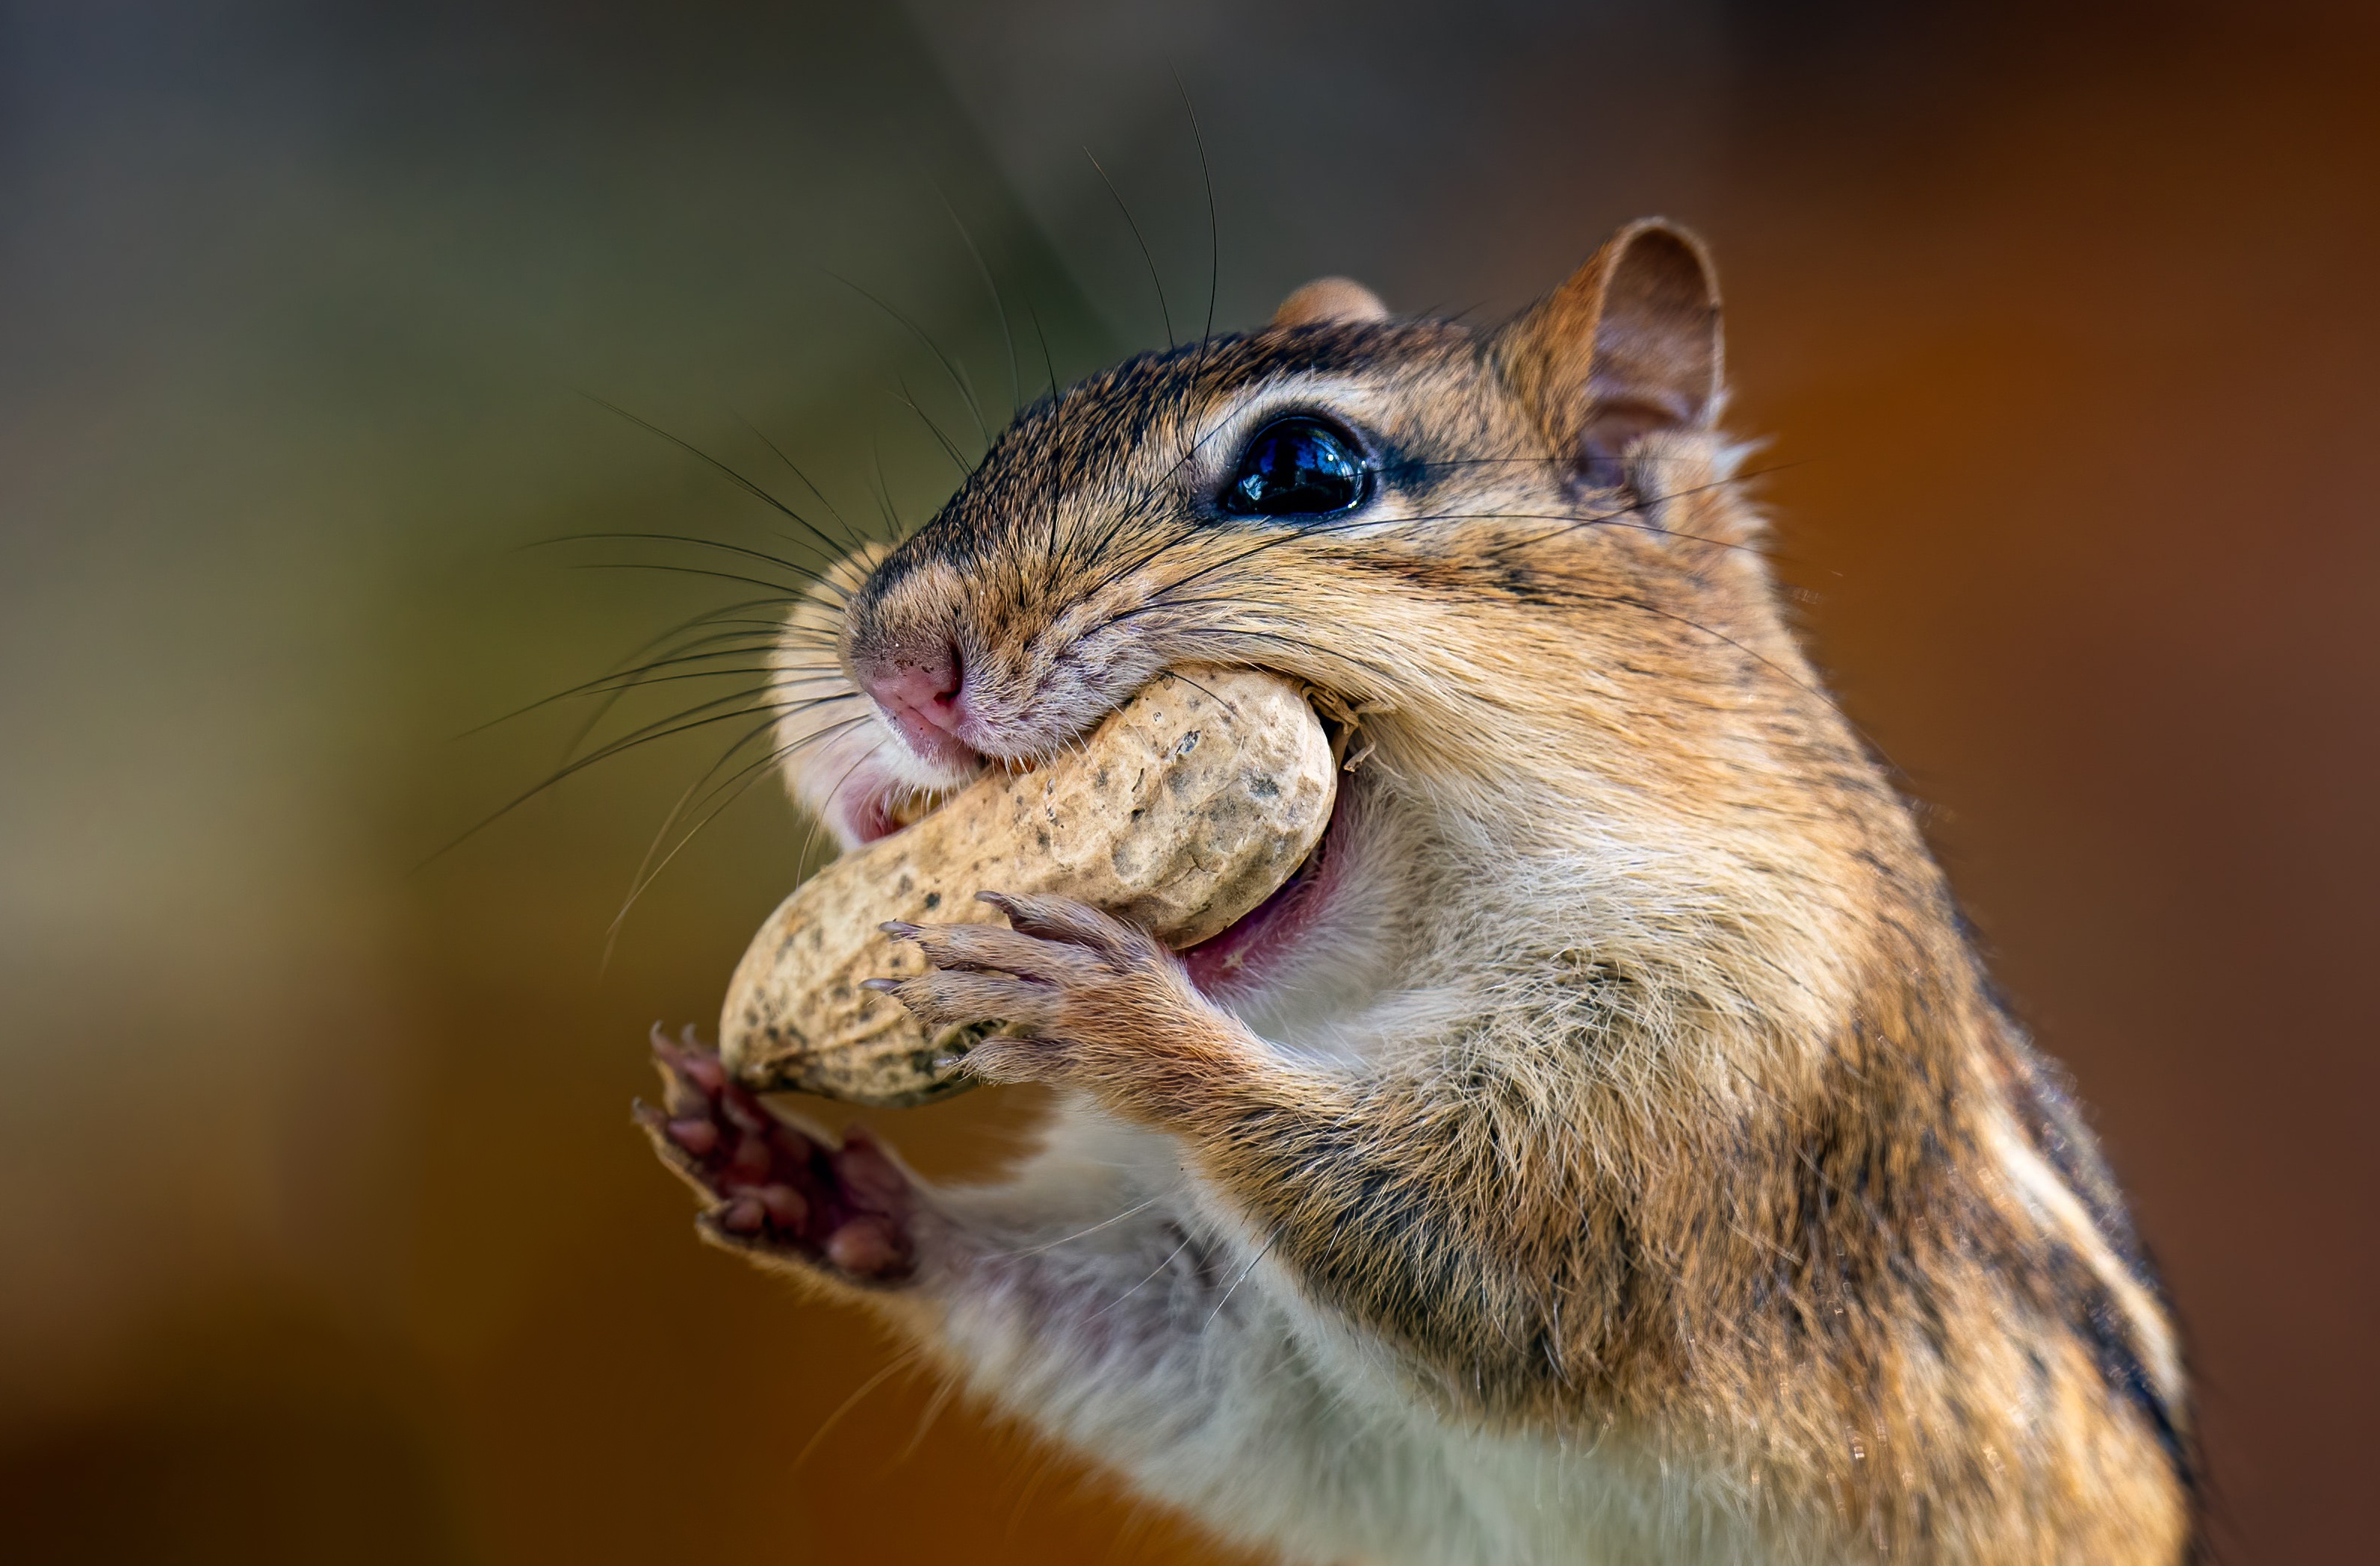 Nut Rodent Peanut 3186x2097